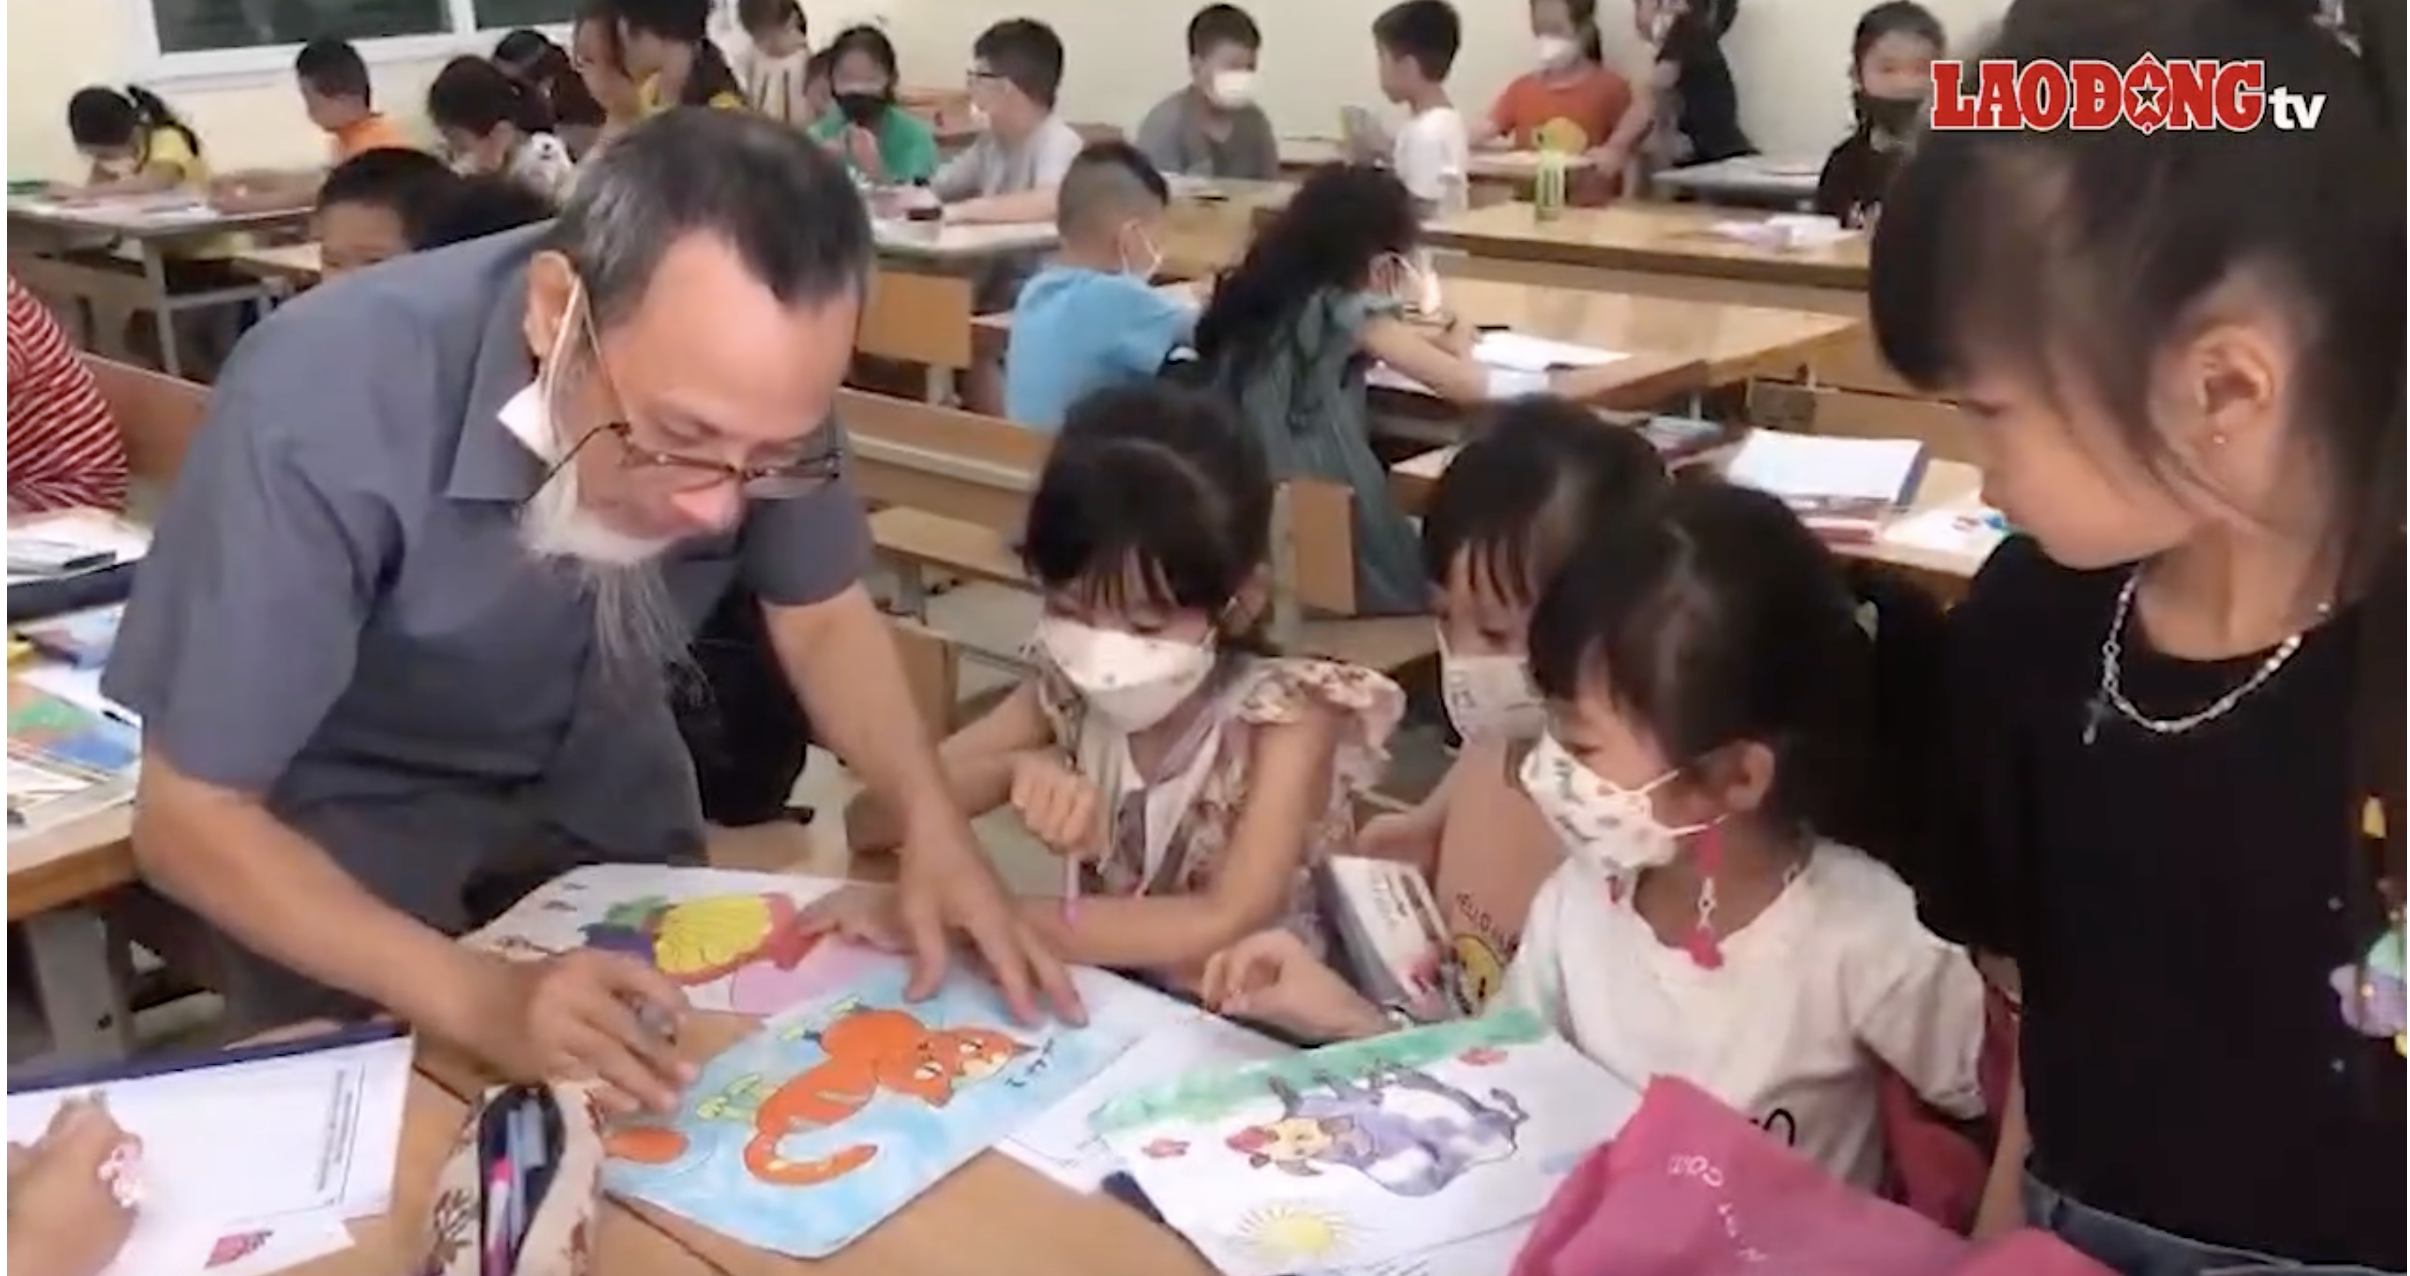 Lớp học vẽ miễn phí thu hút nhiều em nhỏ tham gia. Tại đây các em được hướng dẫn vẽ những bức tranh yêu thích của mình.